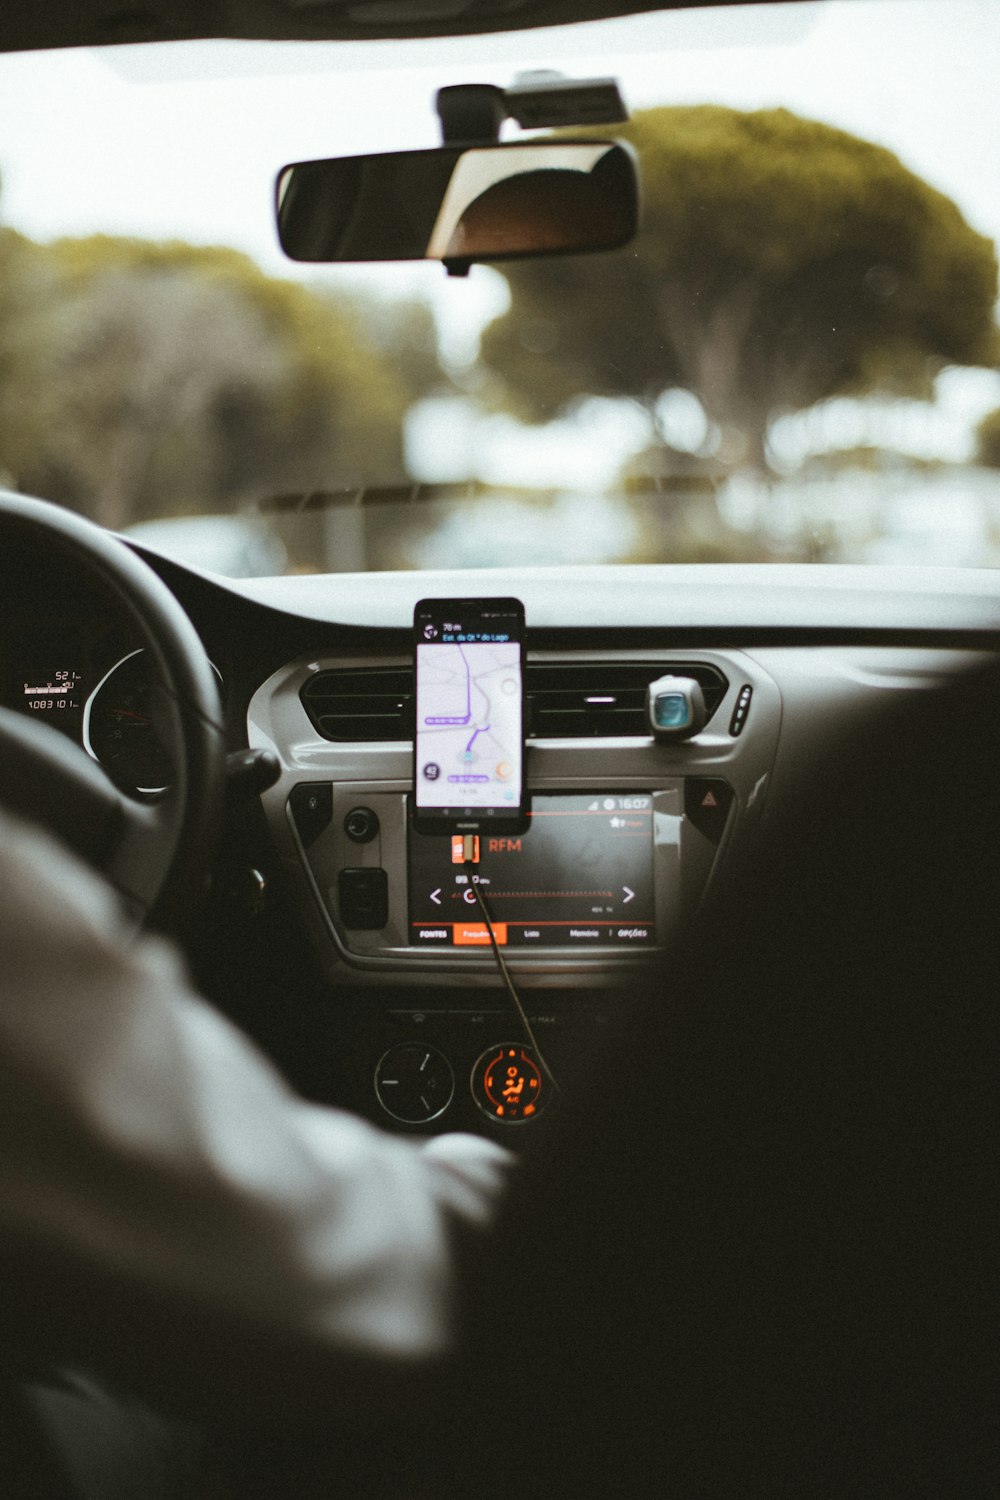 Soporte para smartphone en el interior del coche